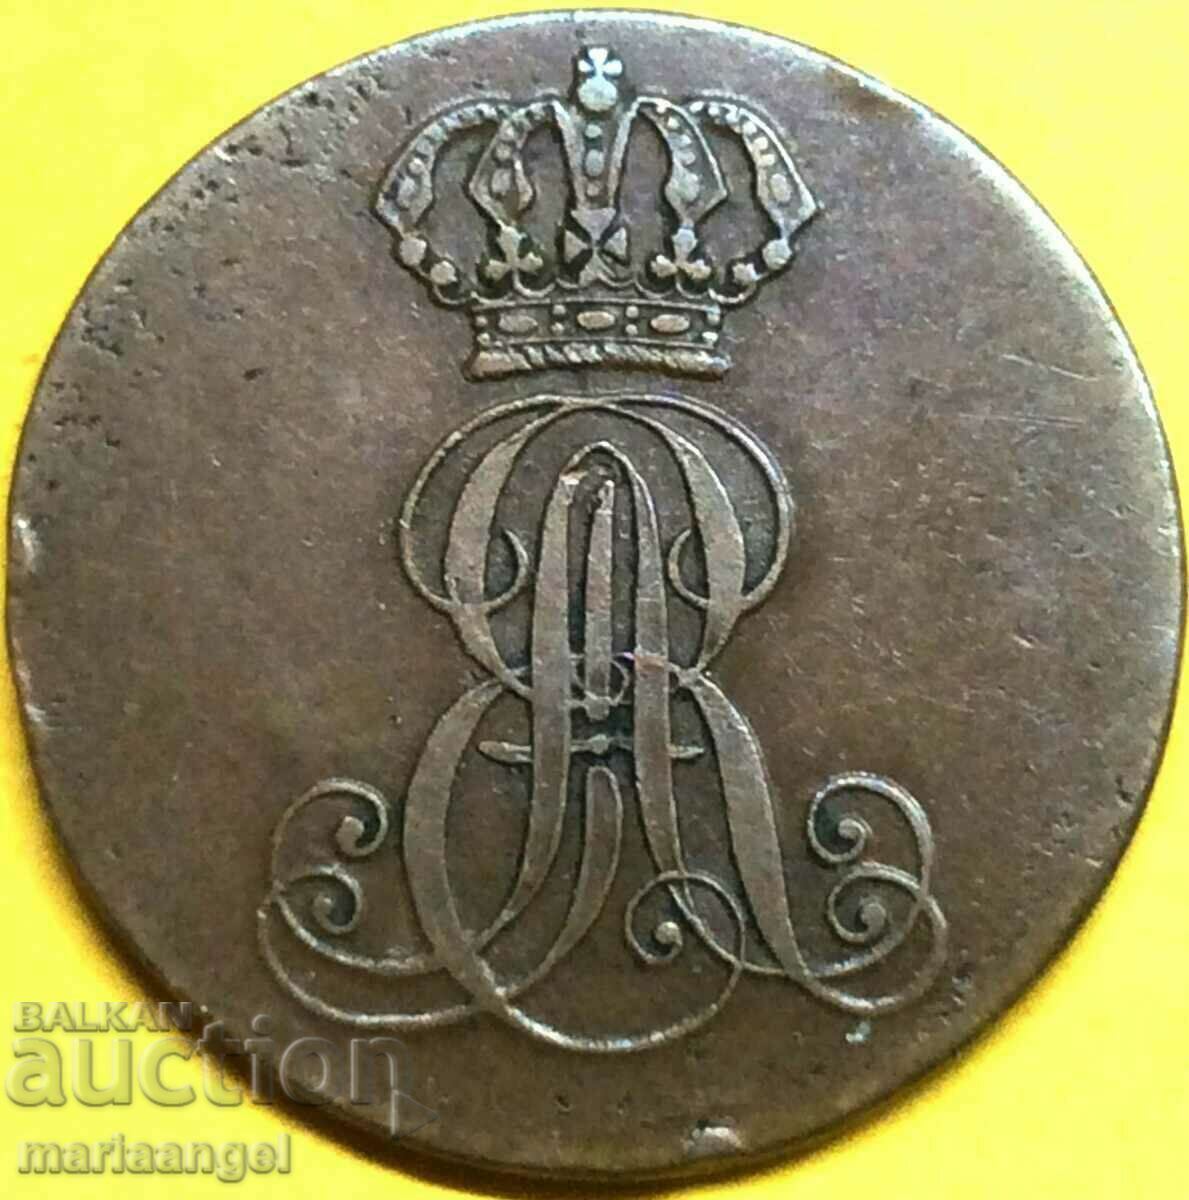 2 Pfennig 1839 Germania Hanovra - an rar